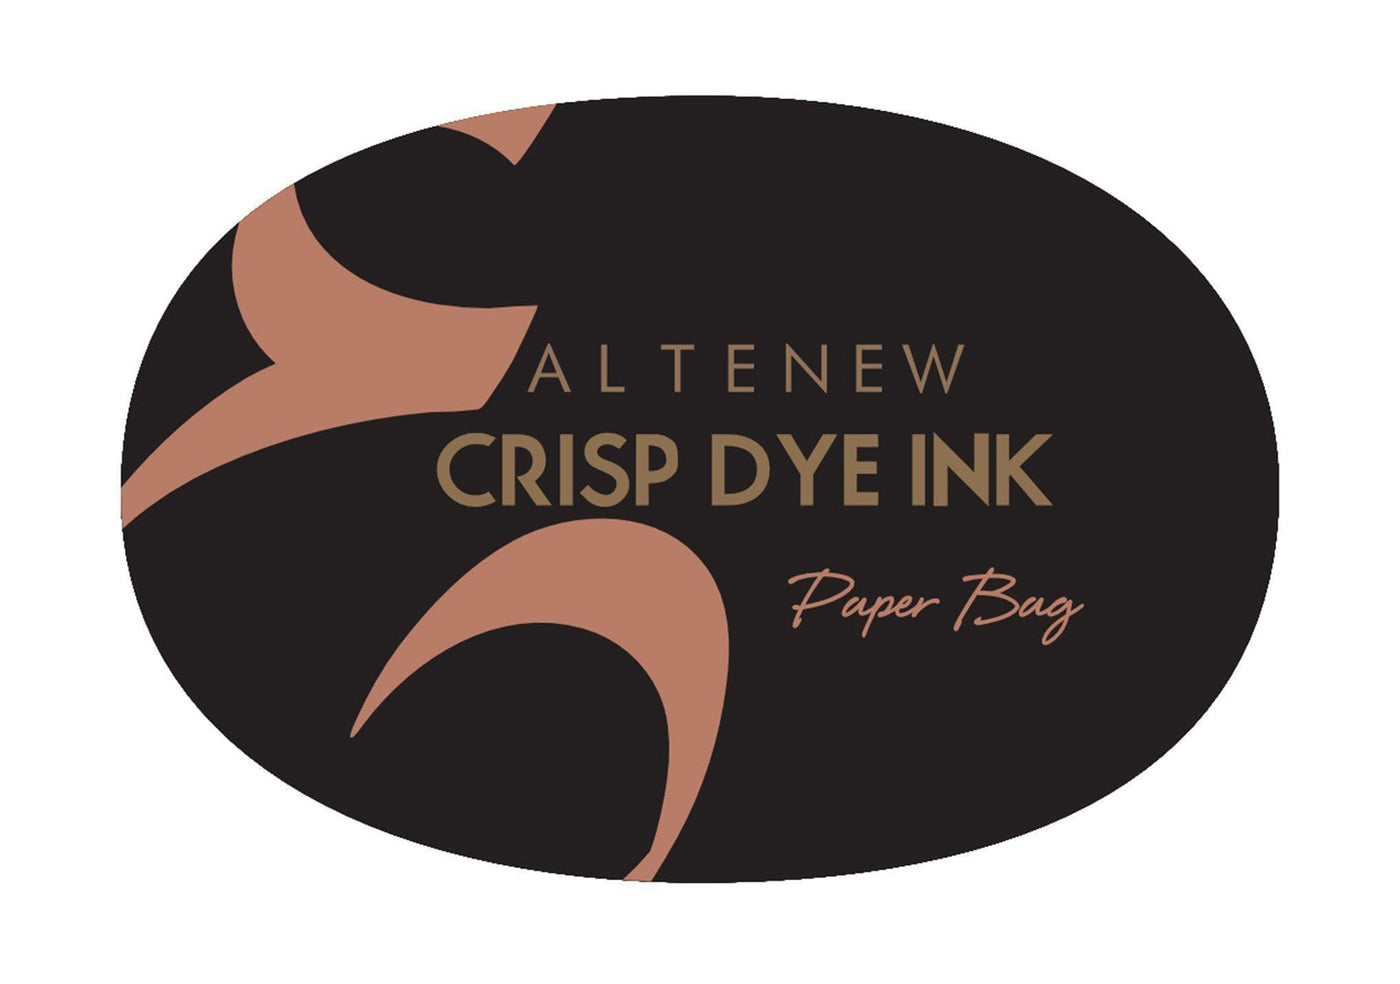 Stewart Superior Inks Paper Bag Crisp Dye Ink